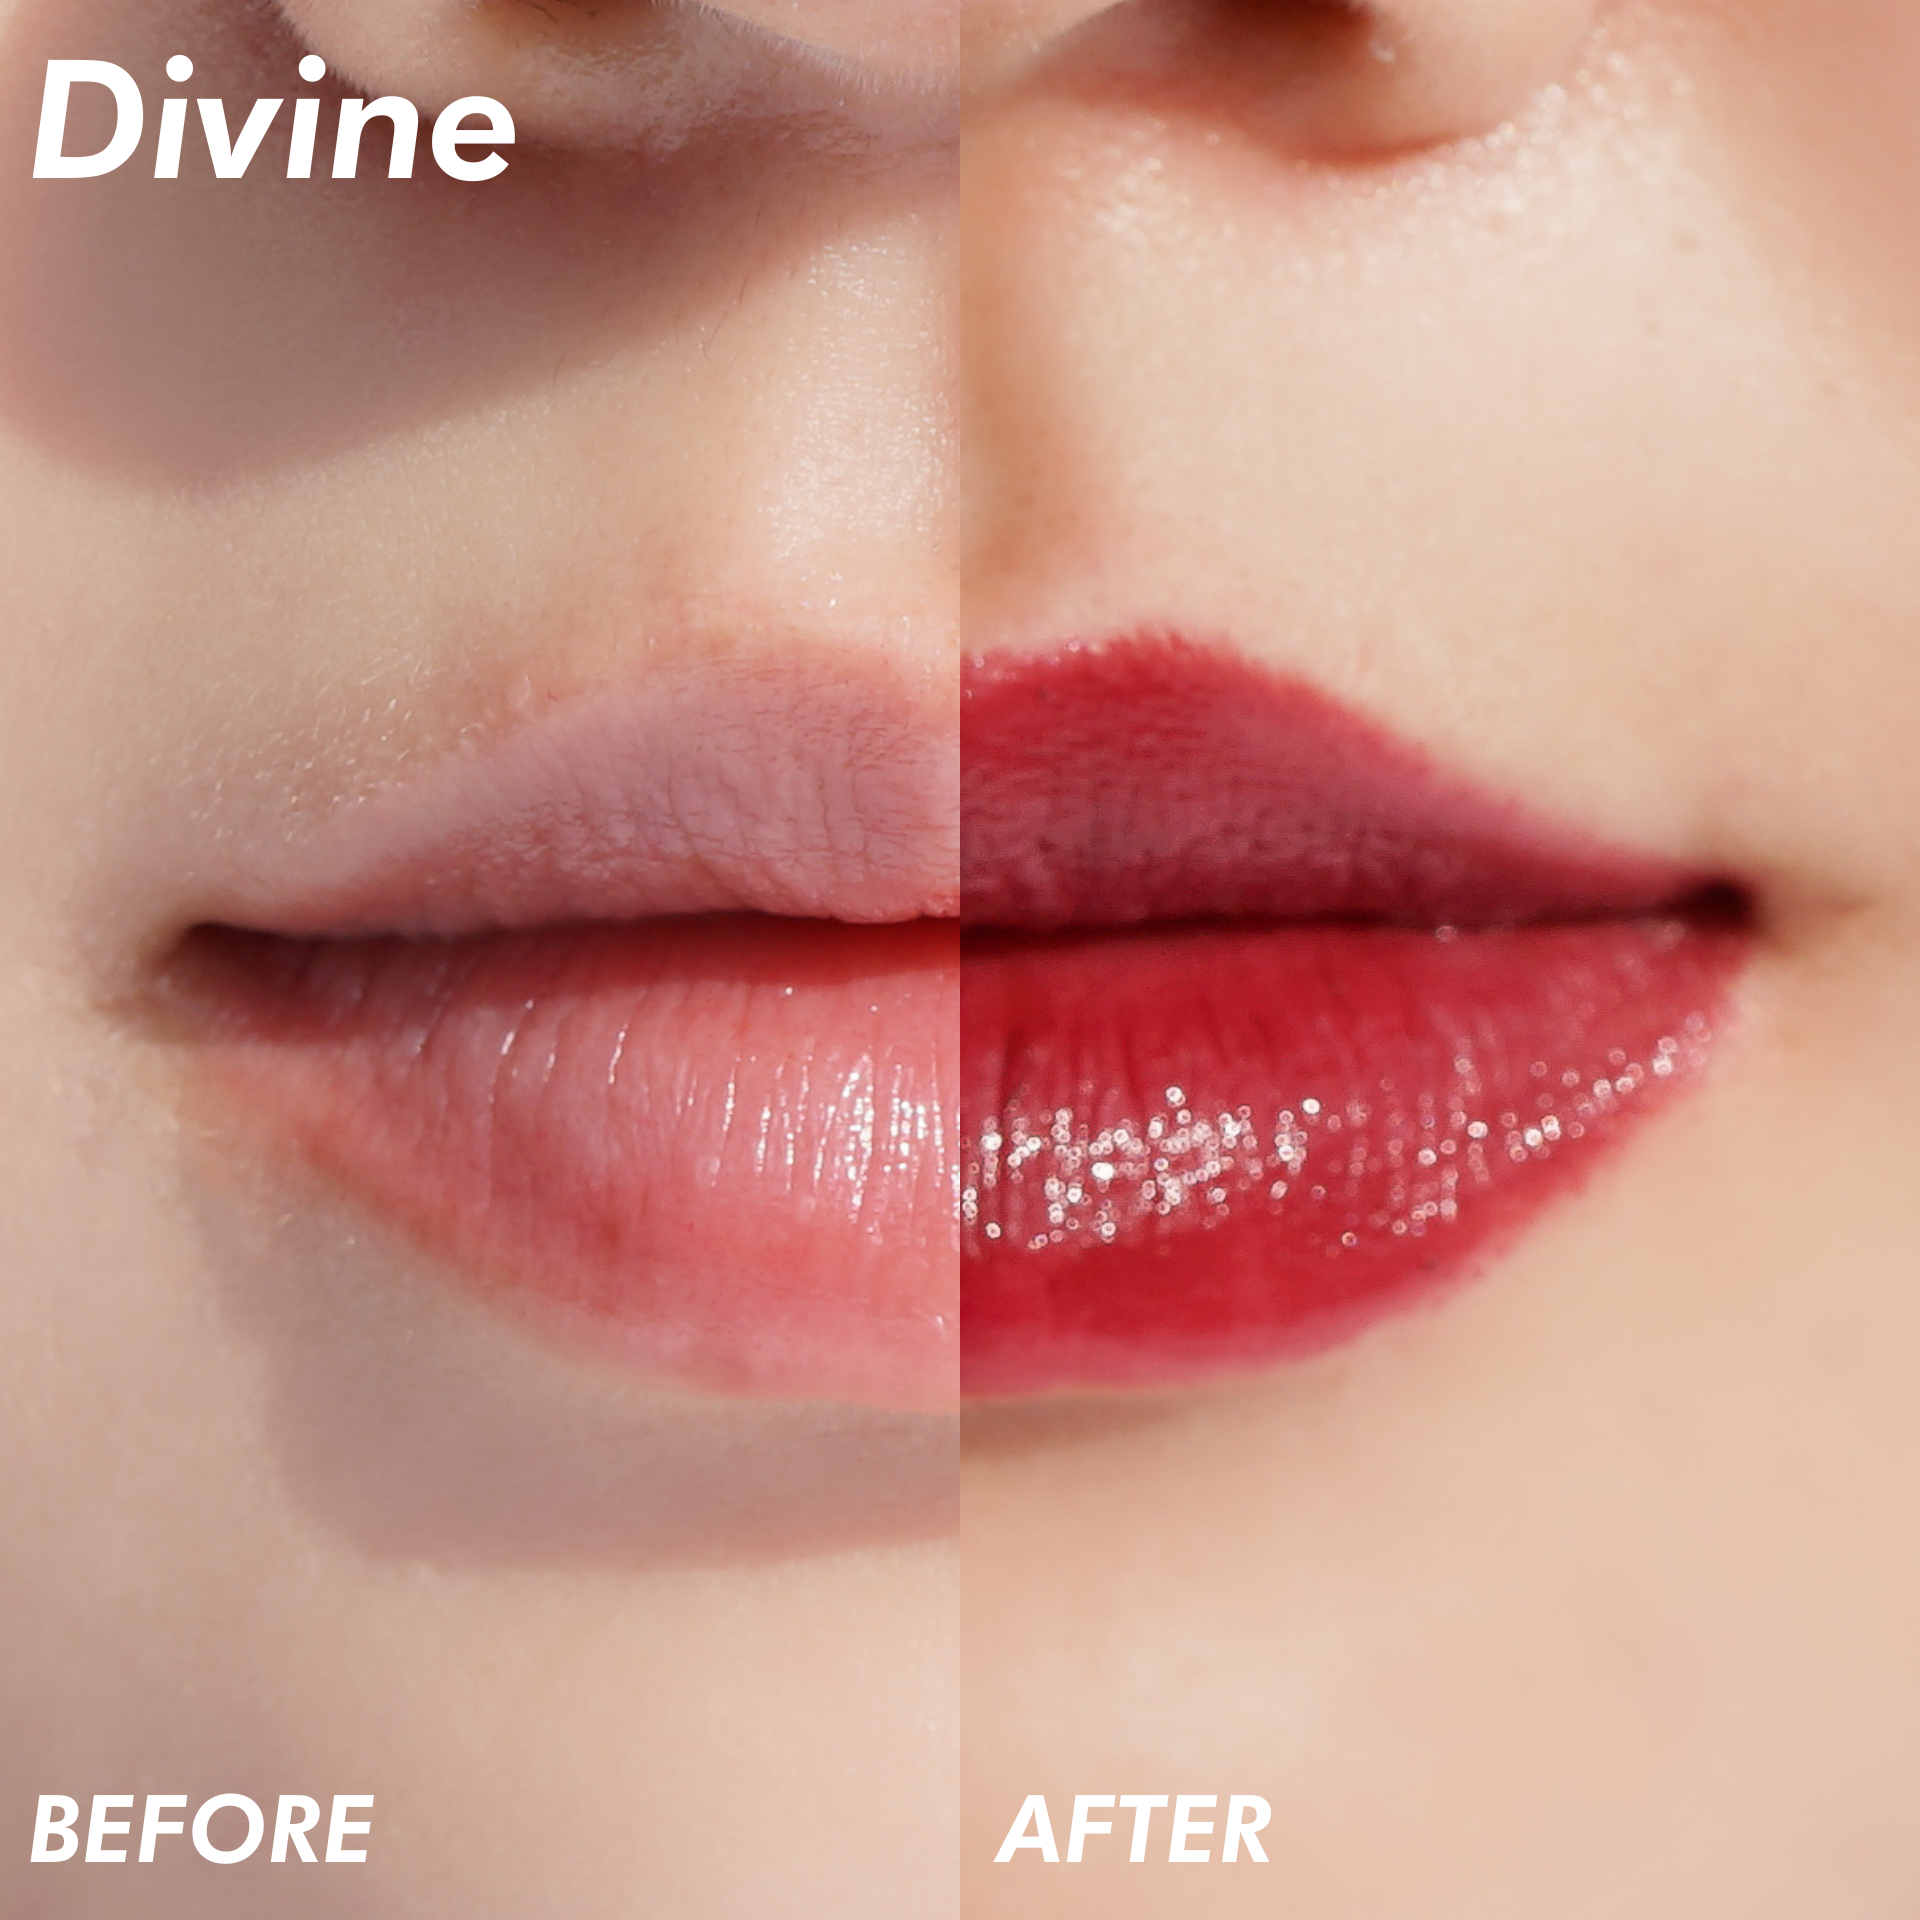 LIP LOCK Color Balm Hydrating Lipstick - Divine